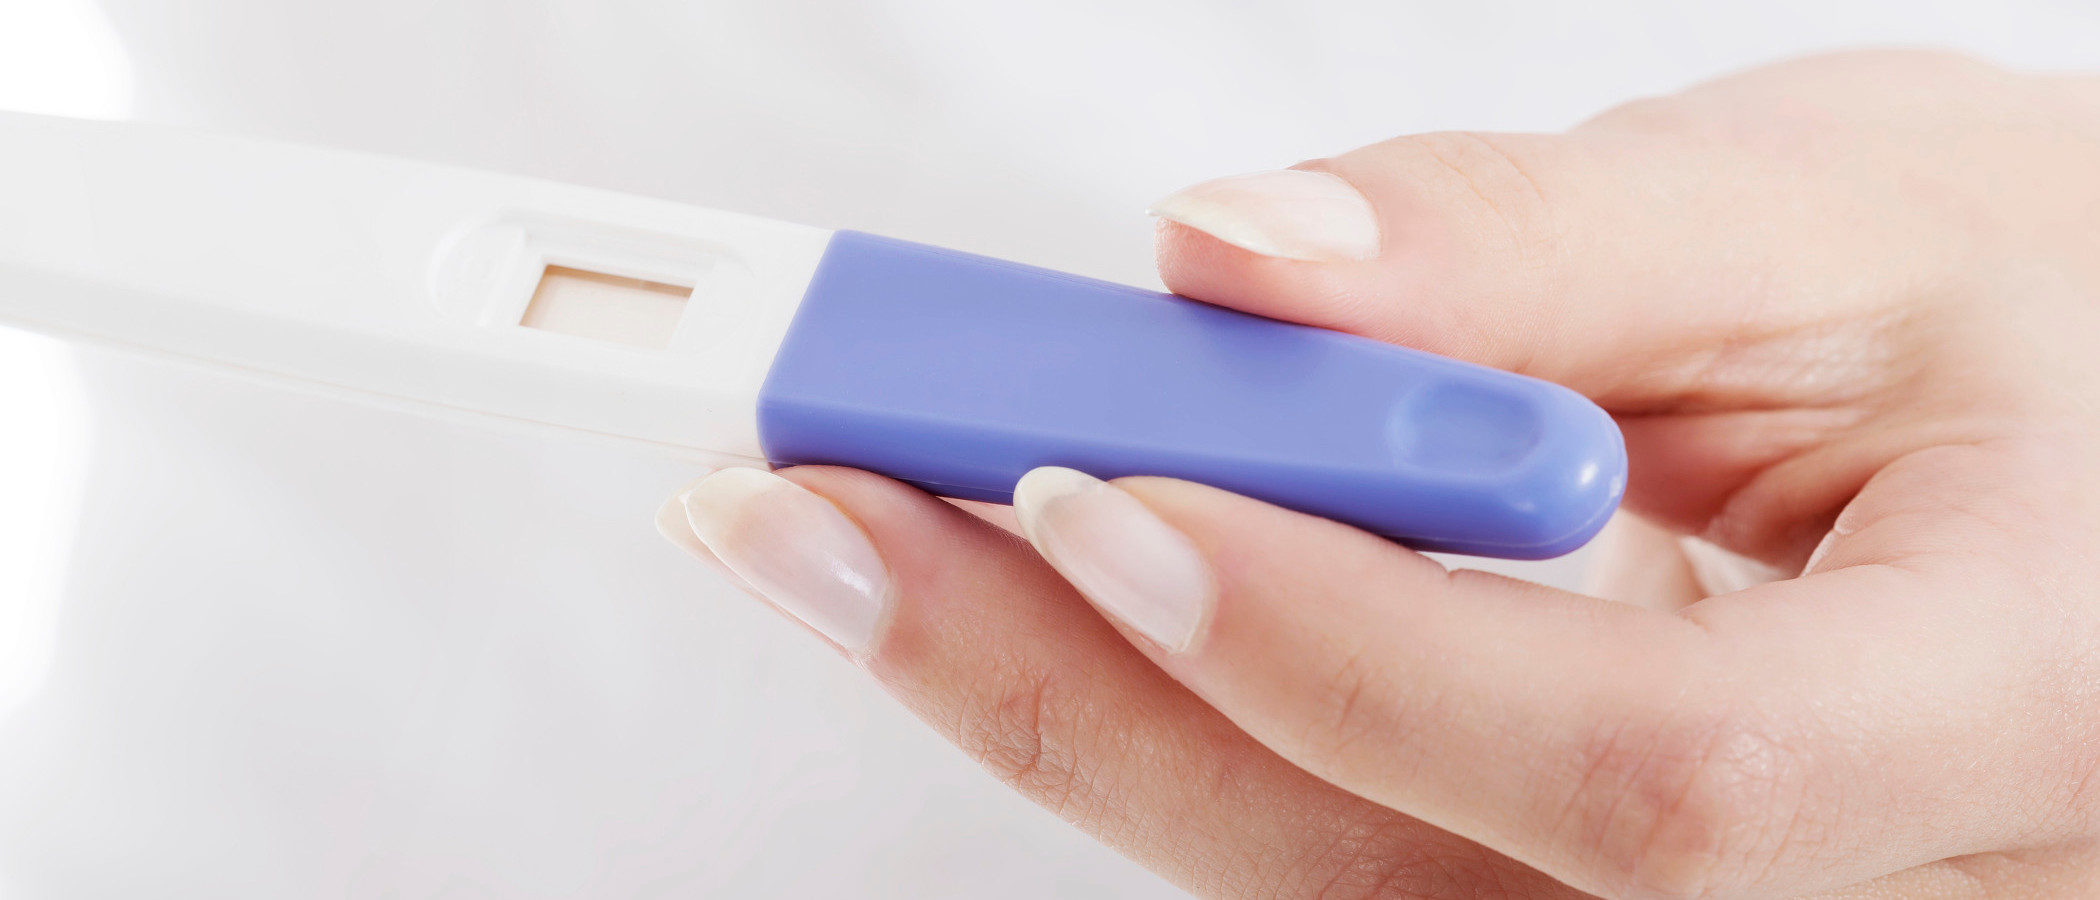 Test de embarazo casero, ¿cómo funciona y qué fiabilidad tiene?